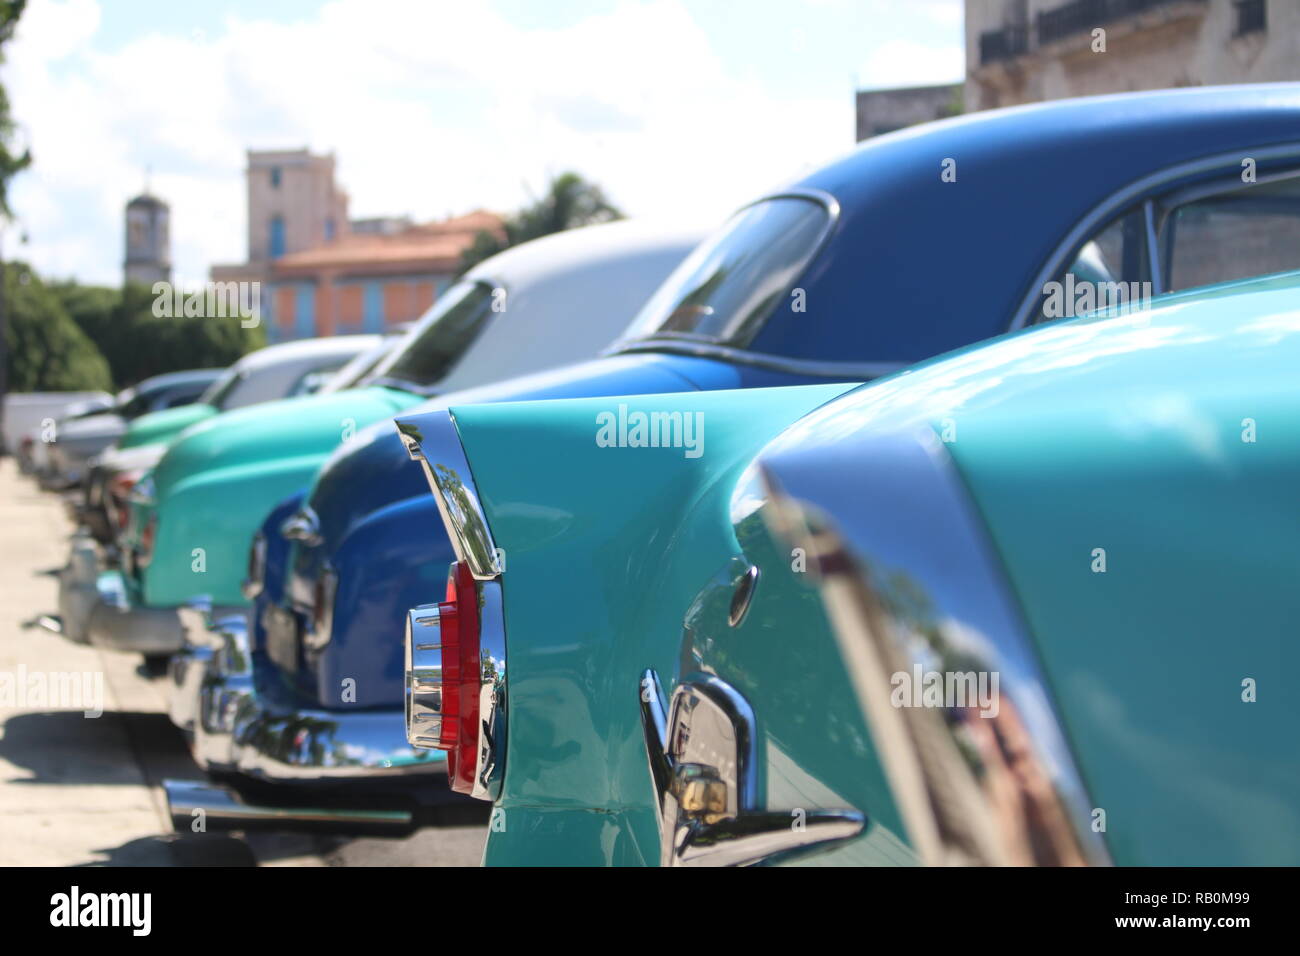 Old cars in Havana Stock Photo